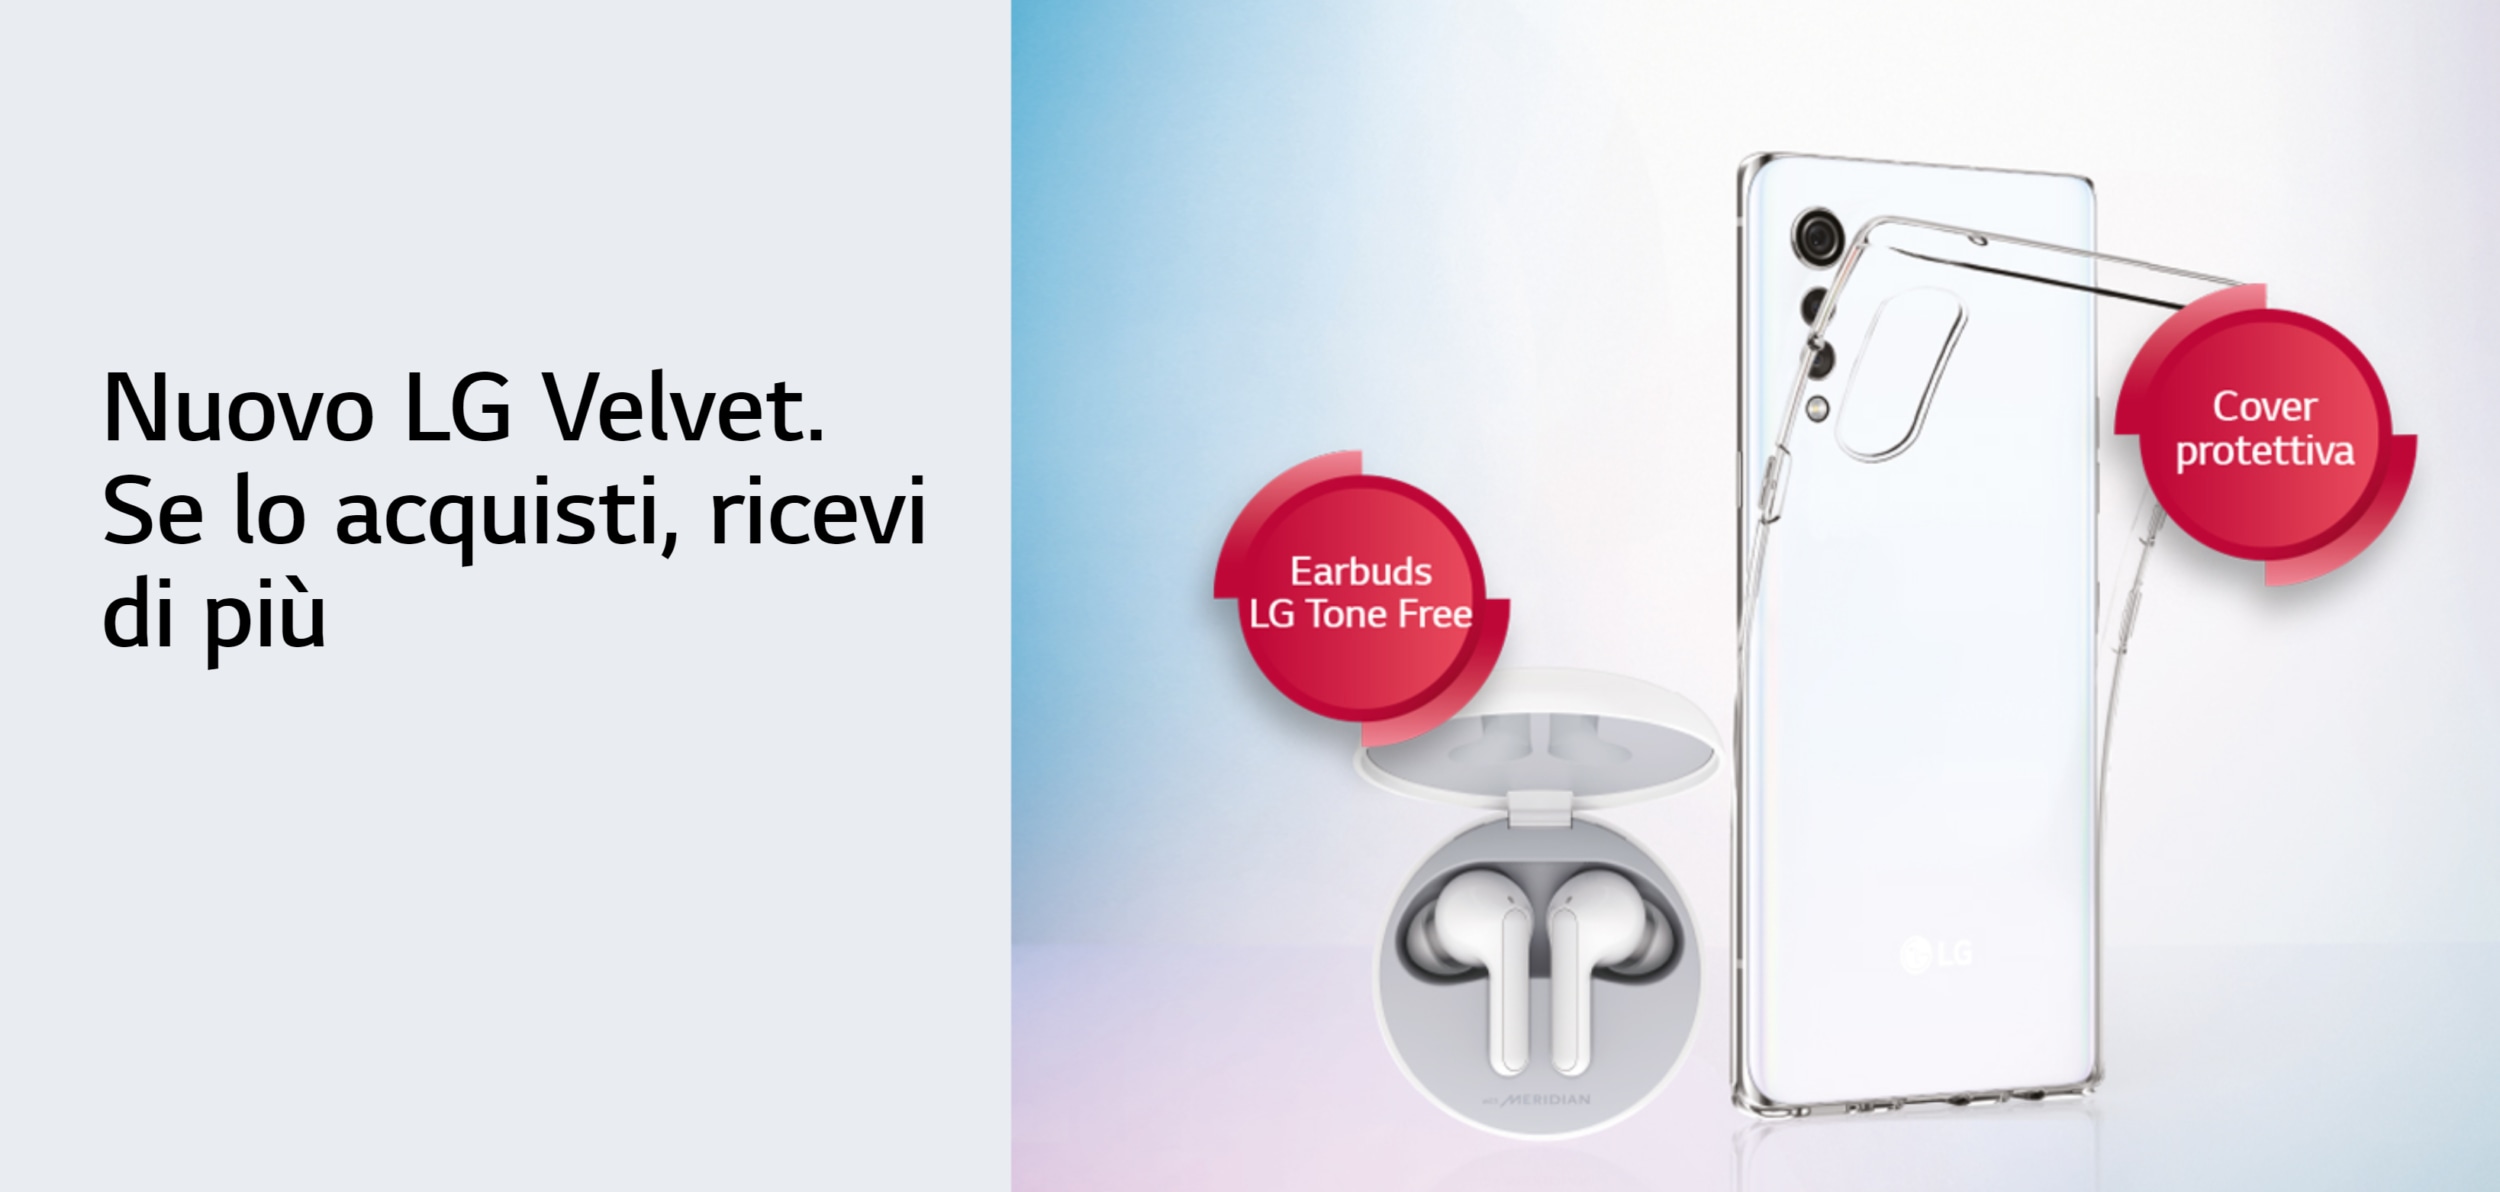 Promozione LG Velvet: acquistatene uno, ricevete LG earbuds e una cover (Ultimi giorni)